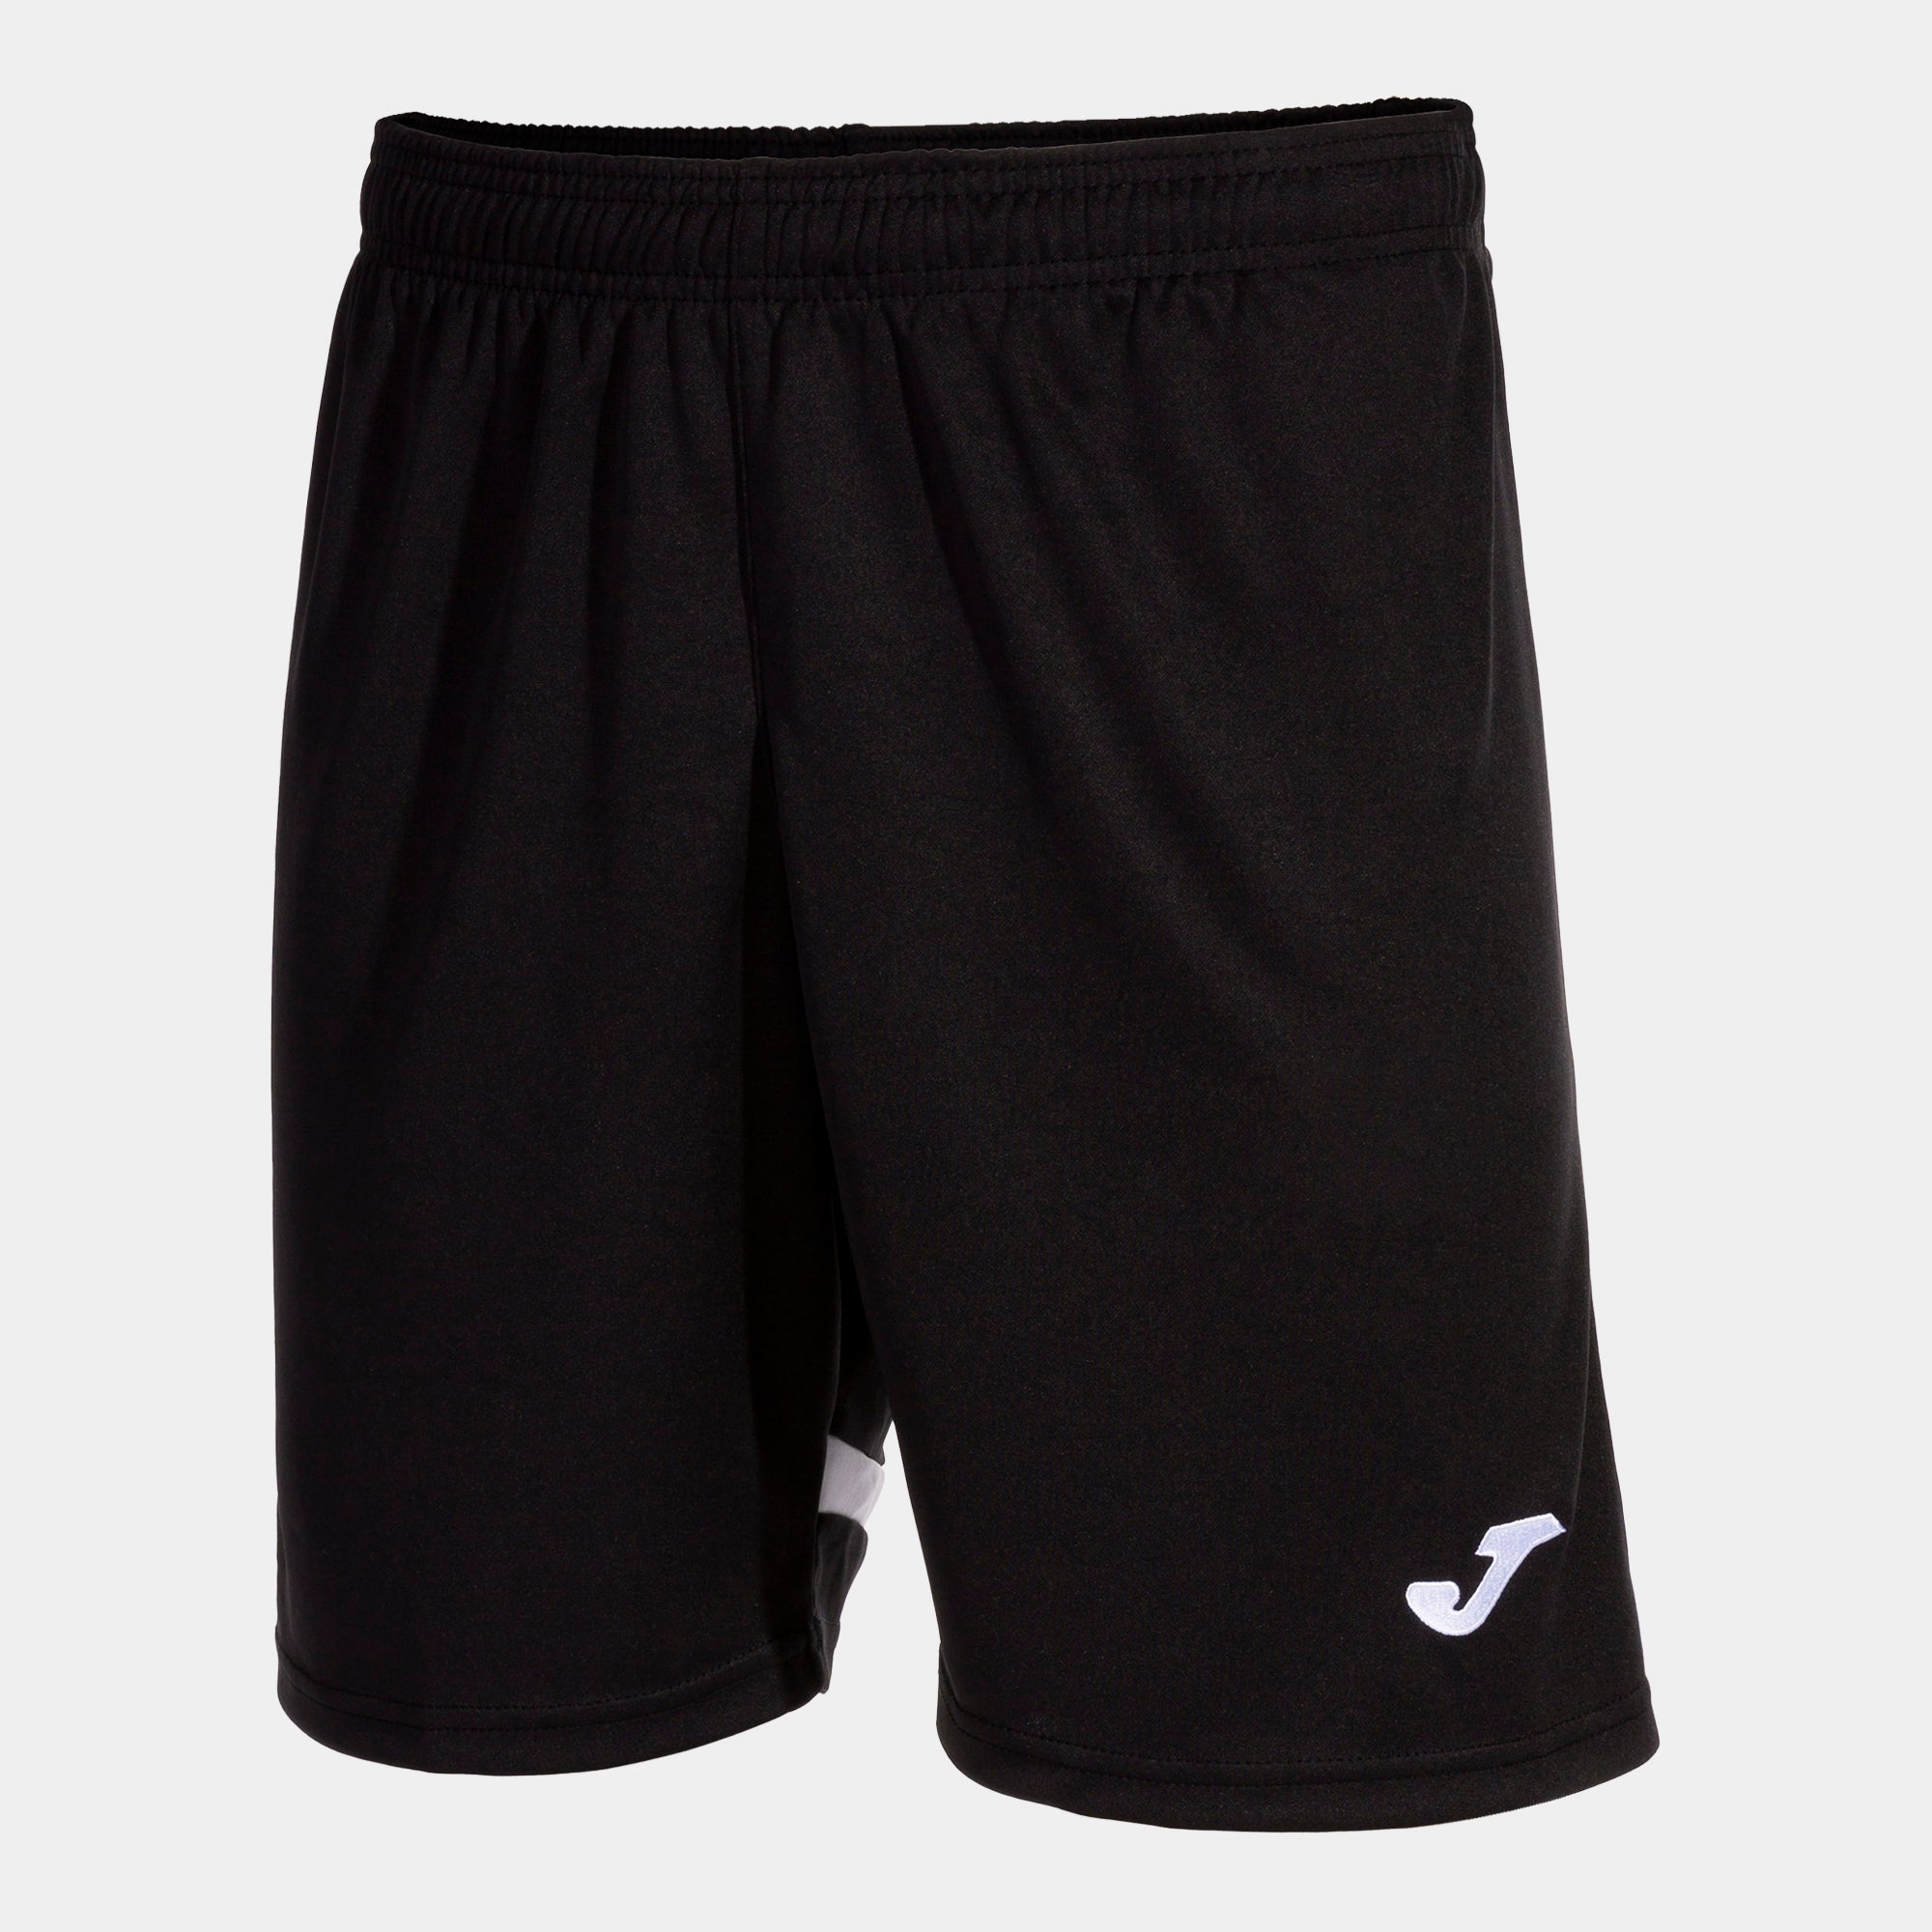 Joma Tokio Shorts - Black/White